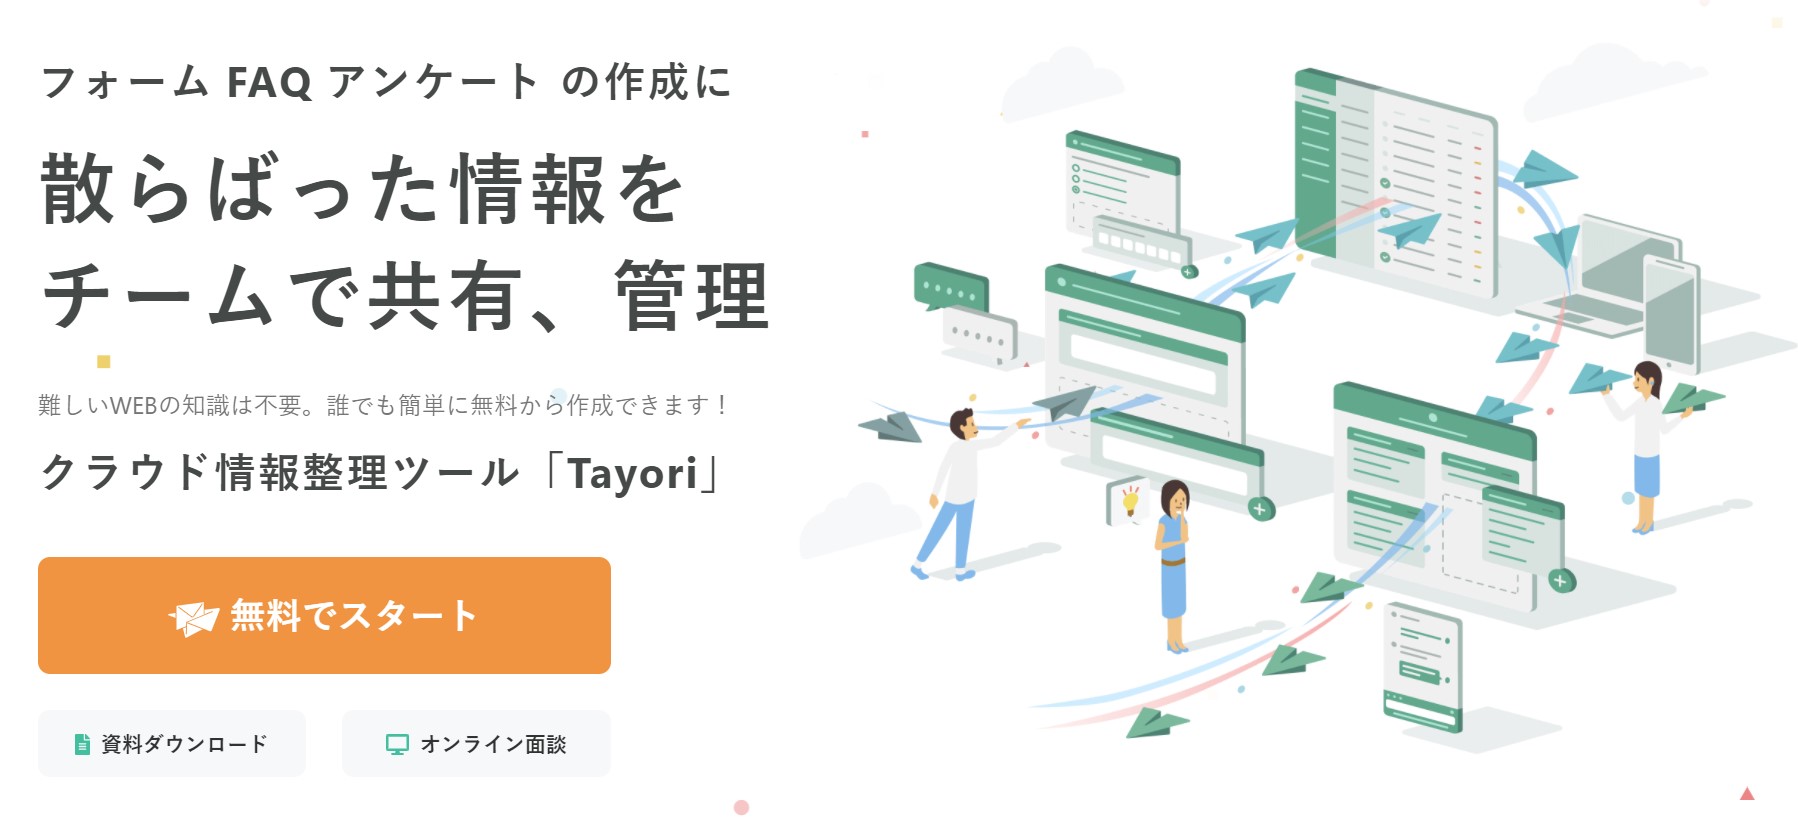 TayoriのWEBサイト
